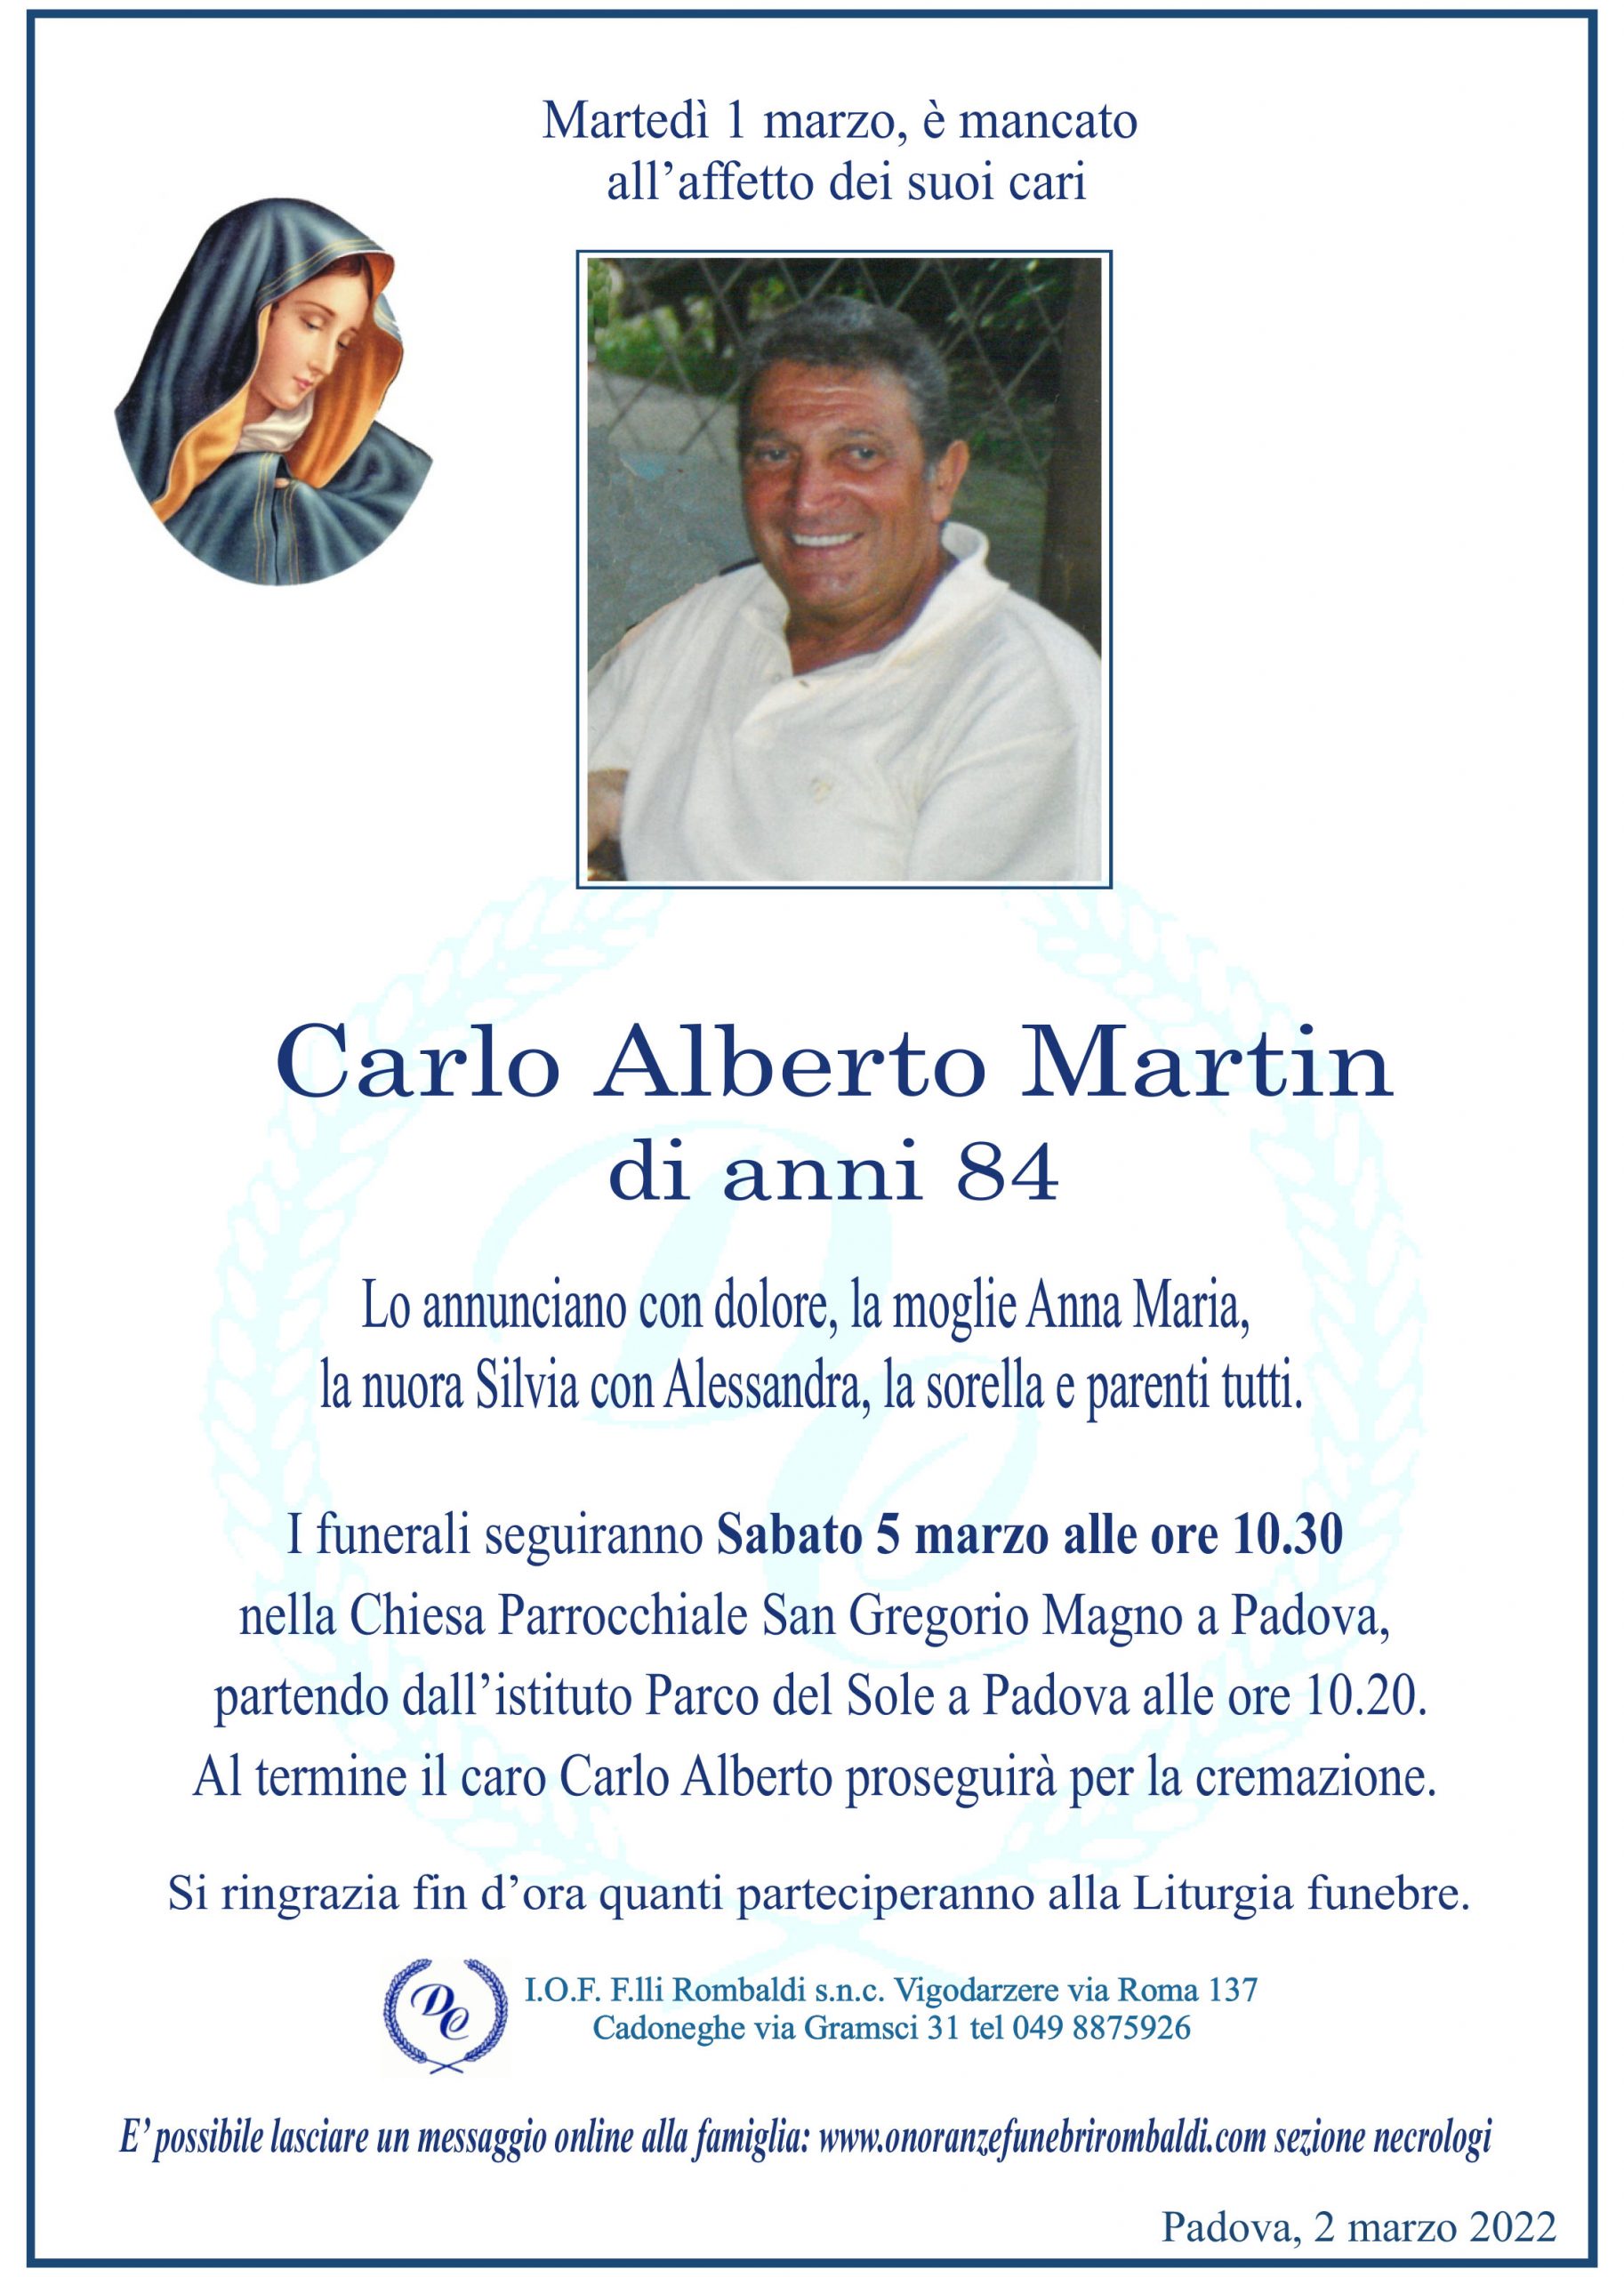 Carlo Alberto Martin